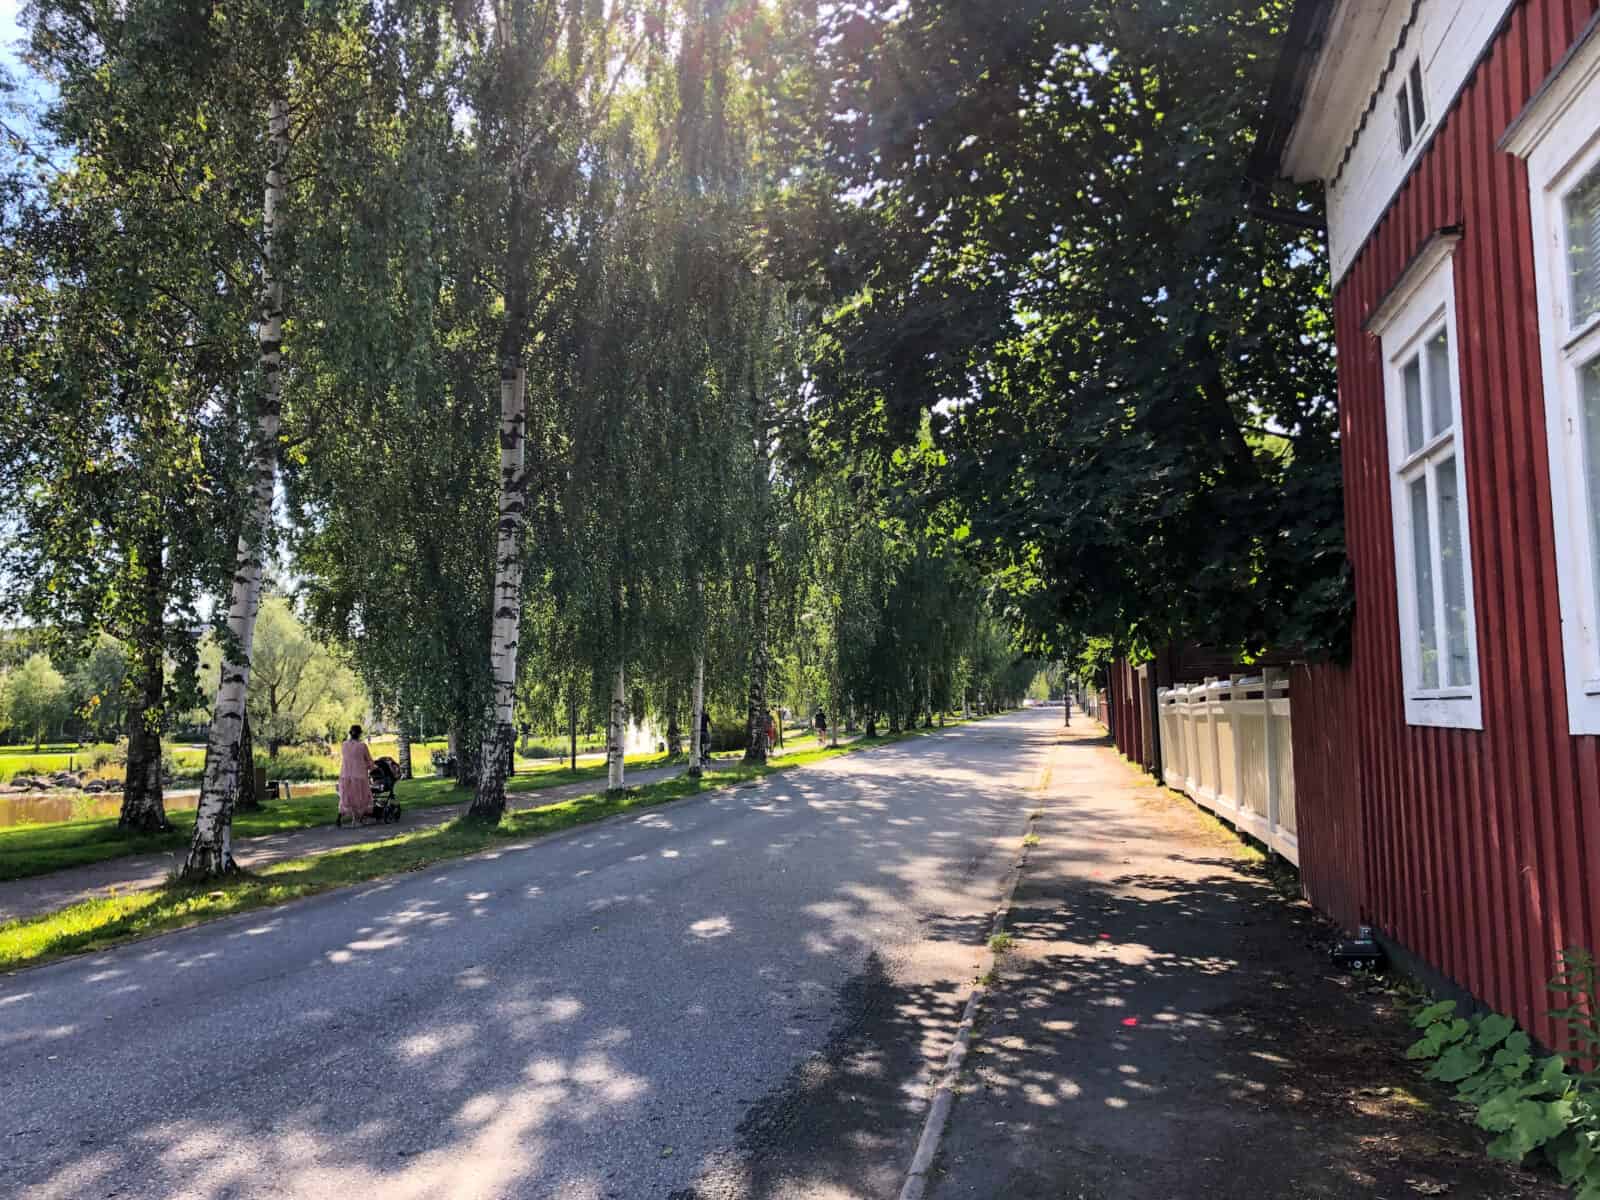 Rantakadun ajorataa ja jalkakäytävää Antti Chydeniuksen kadun puoleisessa päässä. Oikealla punaisen puutalon seinä, vasemmalla koivukuja